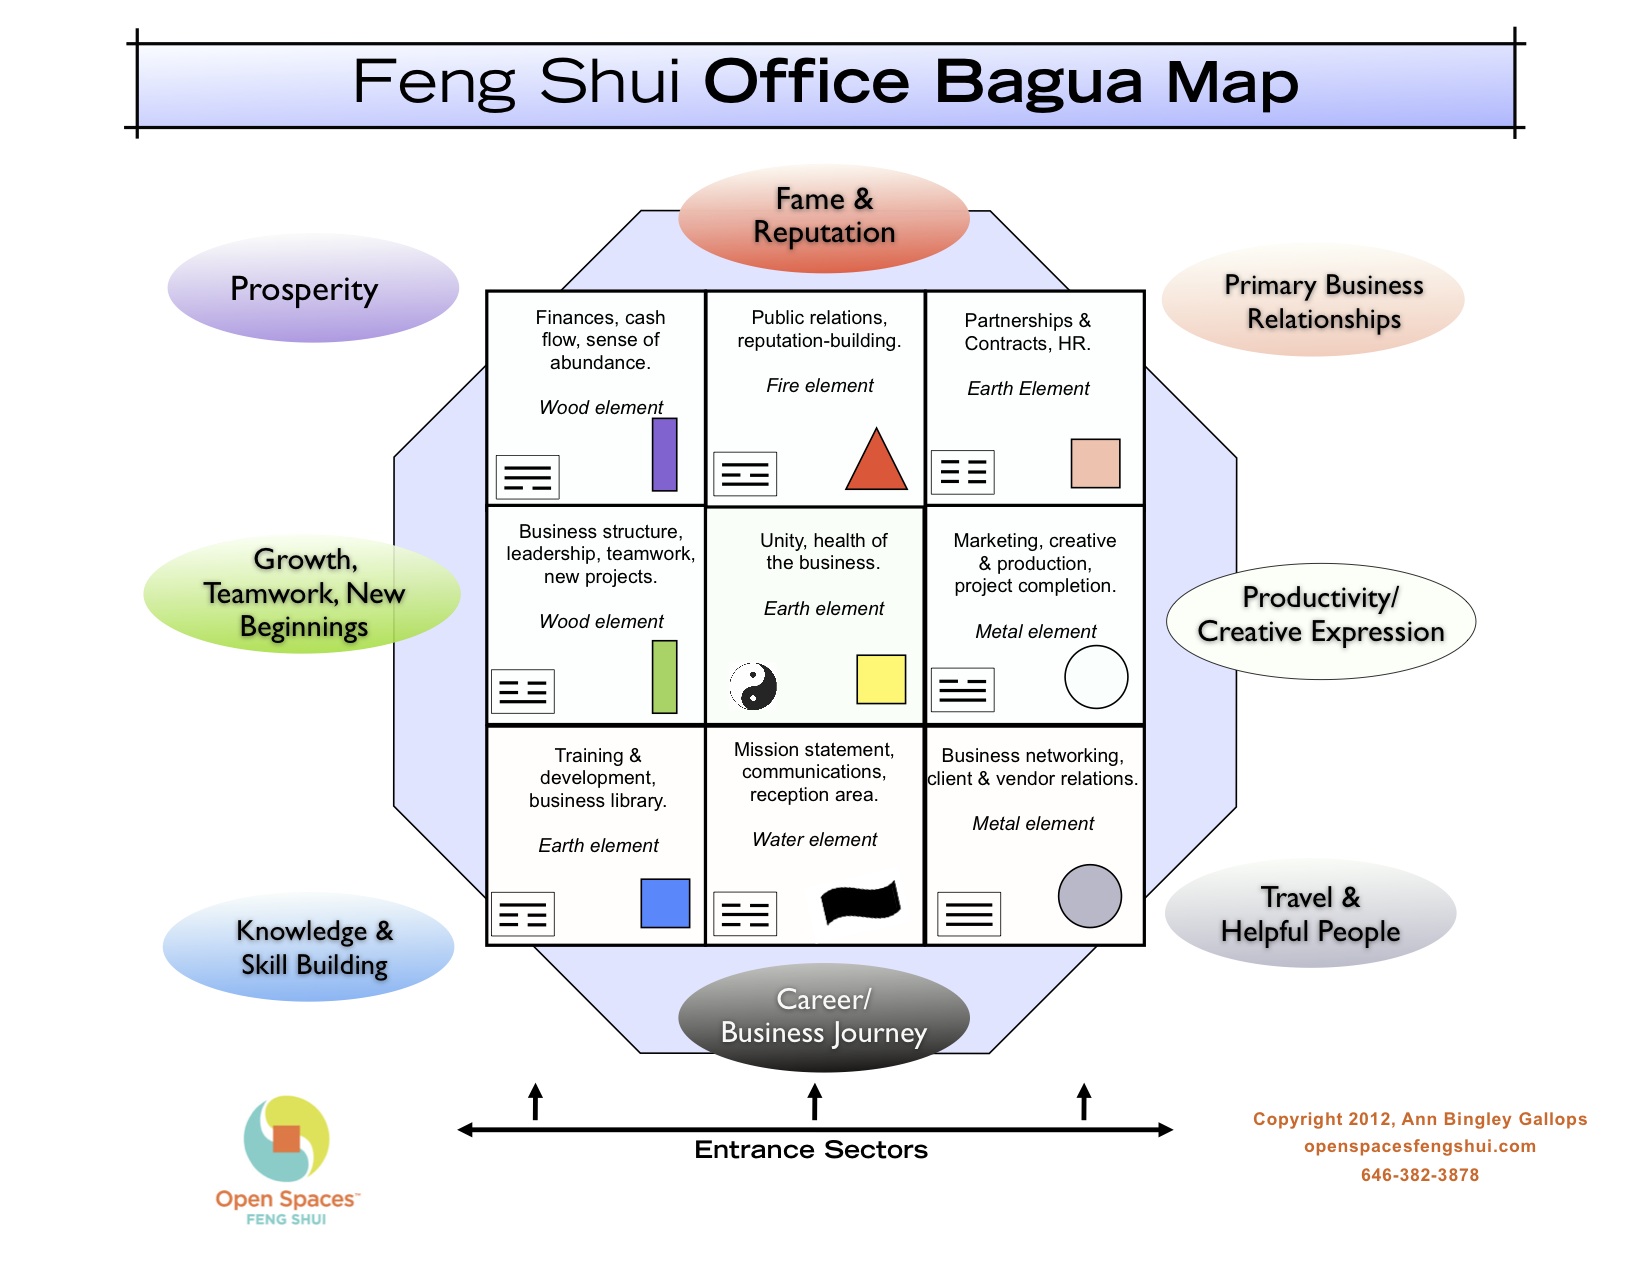 Планировка офиса в соответствии с Багуа